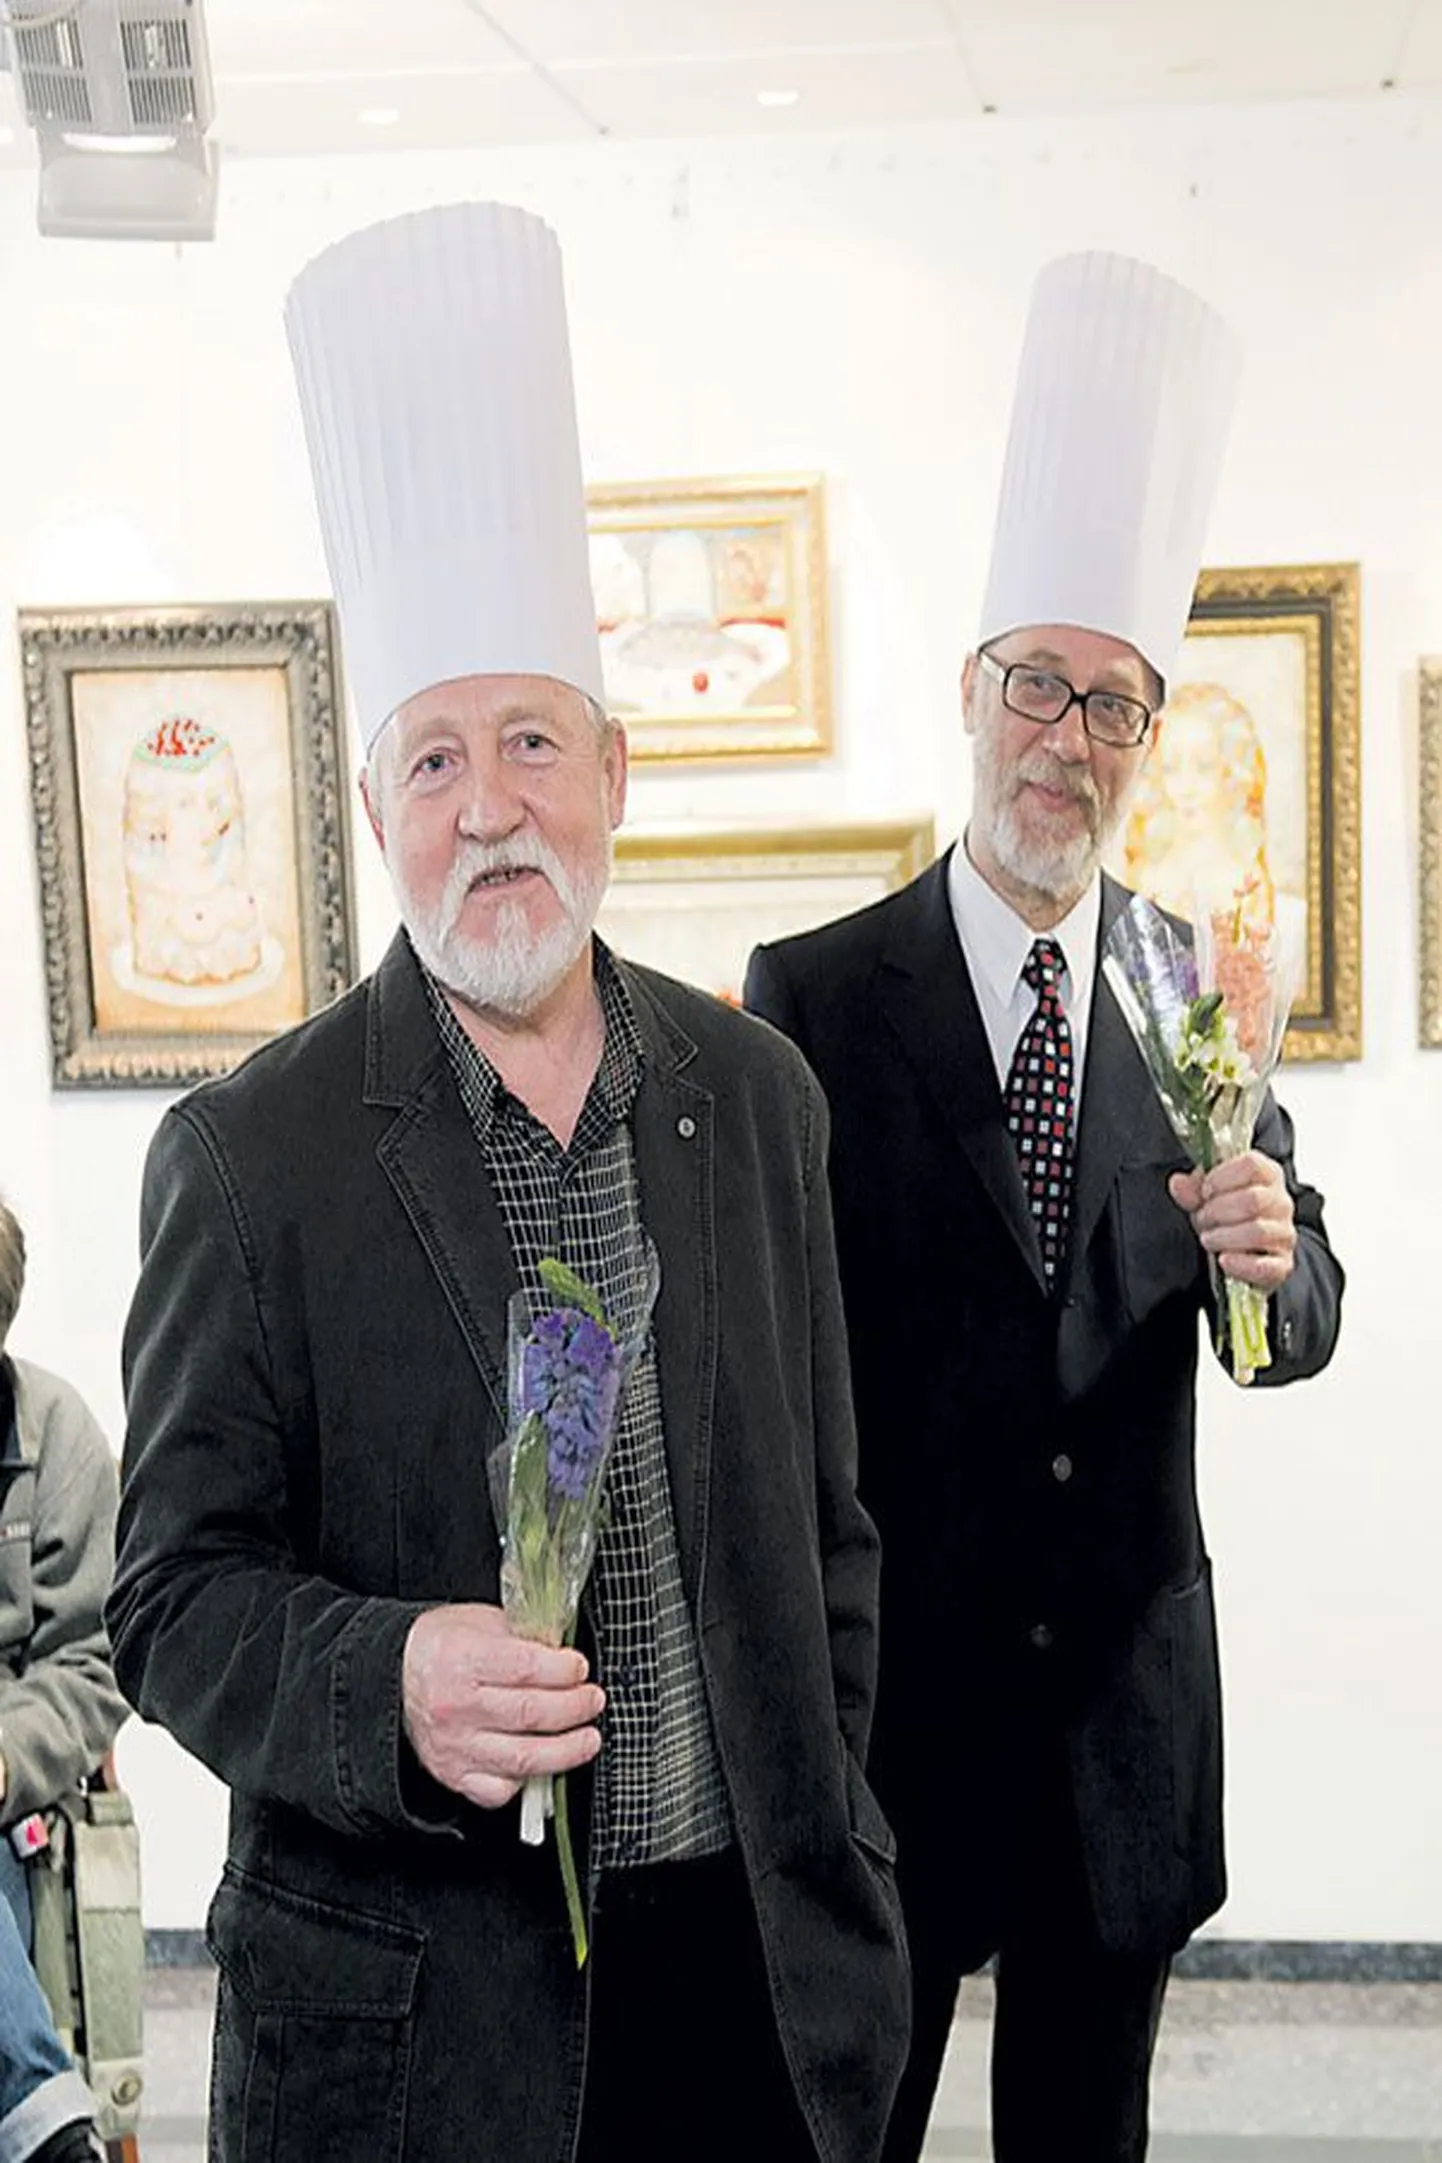 На открытии выставки художники, представившие результаты своей творческой кухни, надели поварские колпаки, Анатолий Страхов (слева) и Валерий Лаур в том числе.